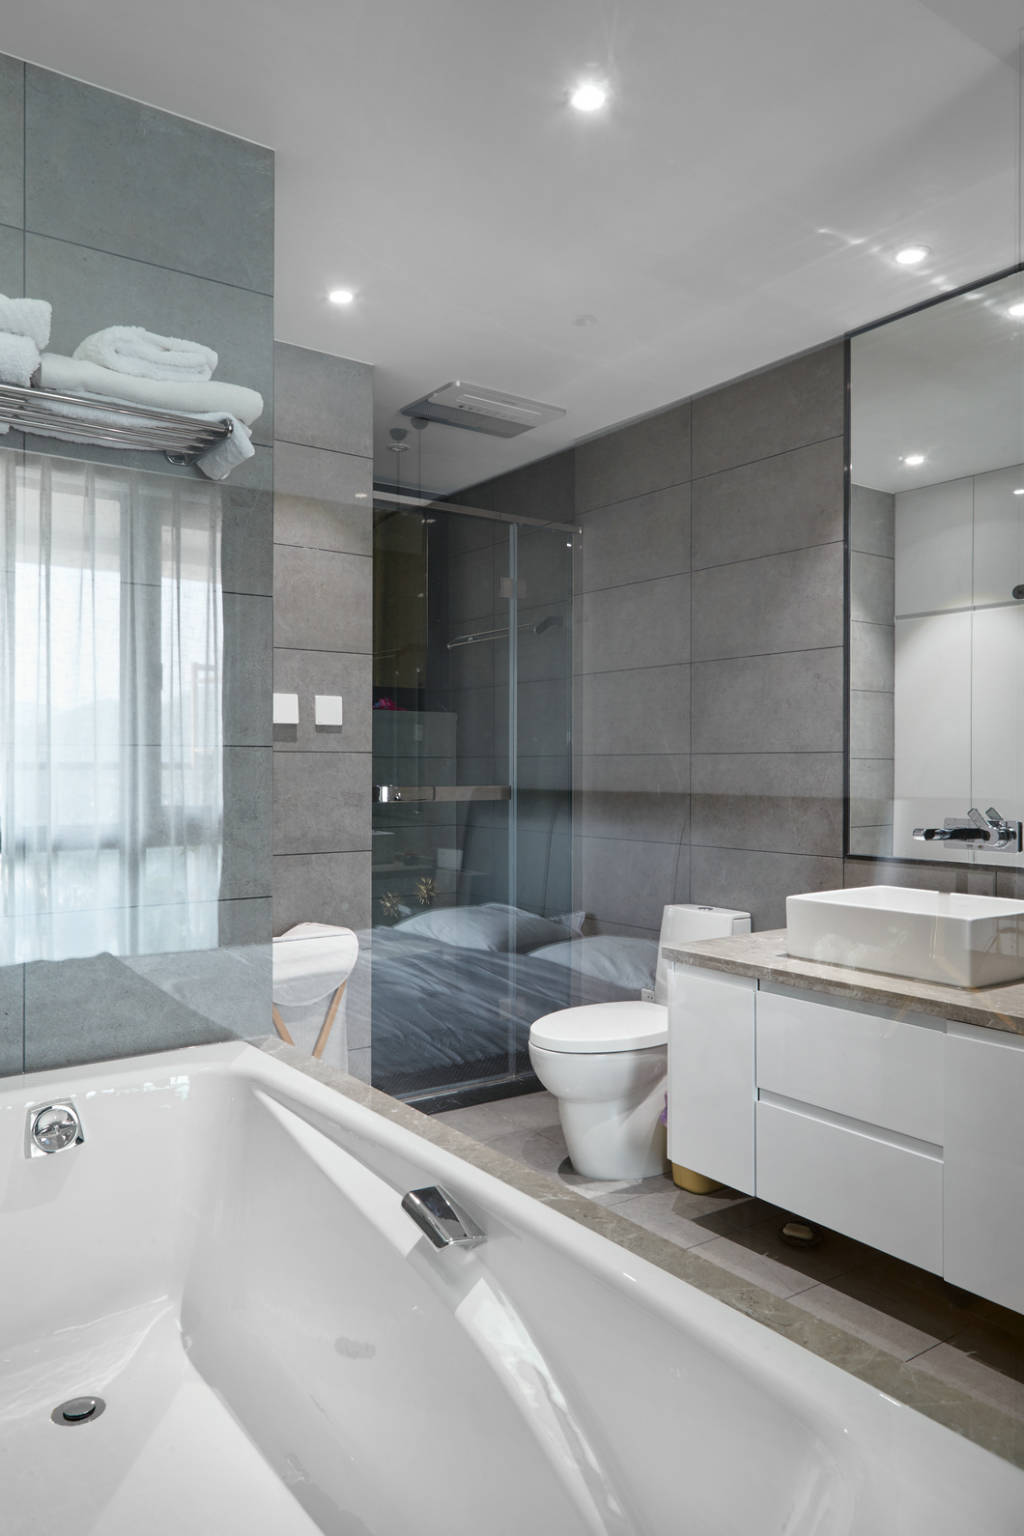 卫生间使用灰色为背景，白色解决在空间中显得更加明亮，整体效果干净简洁。